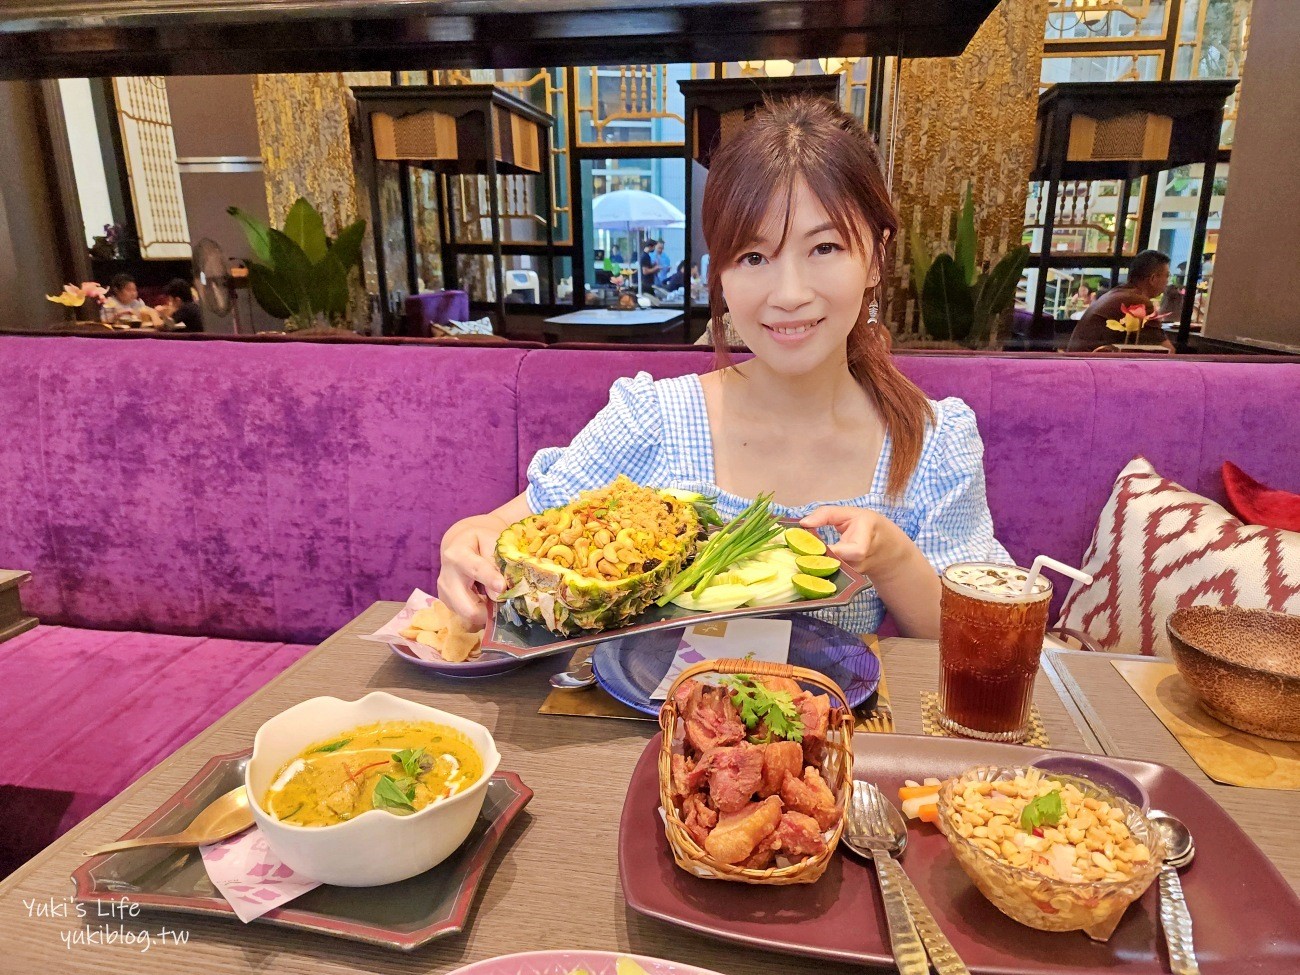 泰國曼谷必吃美食》Nara Thai Cuisine，推薦來吃這家泰式料理餐廳不踩雷~ - yukiblog.tw